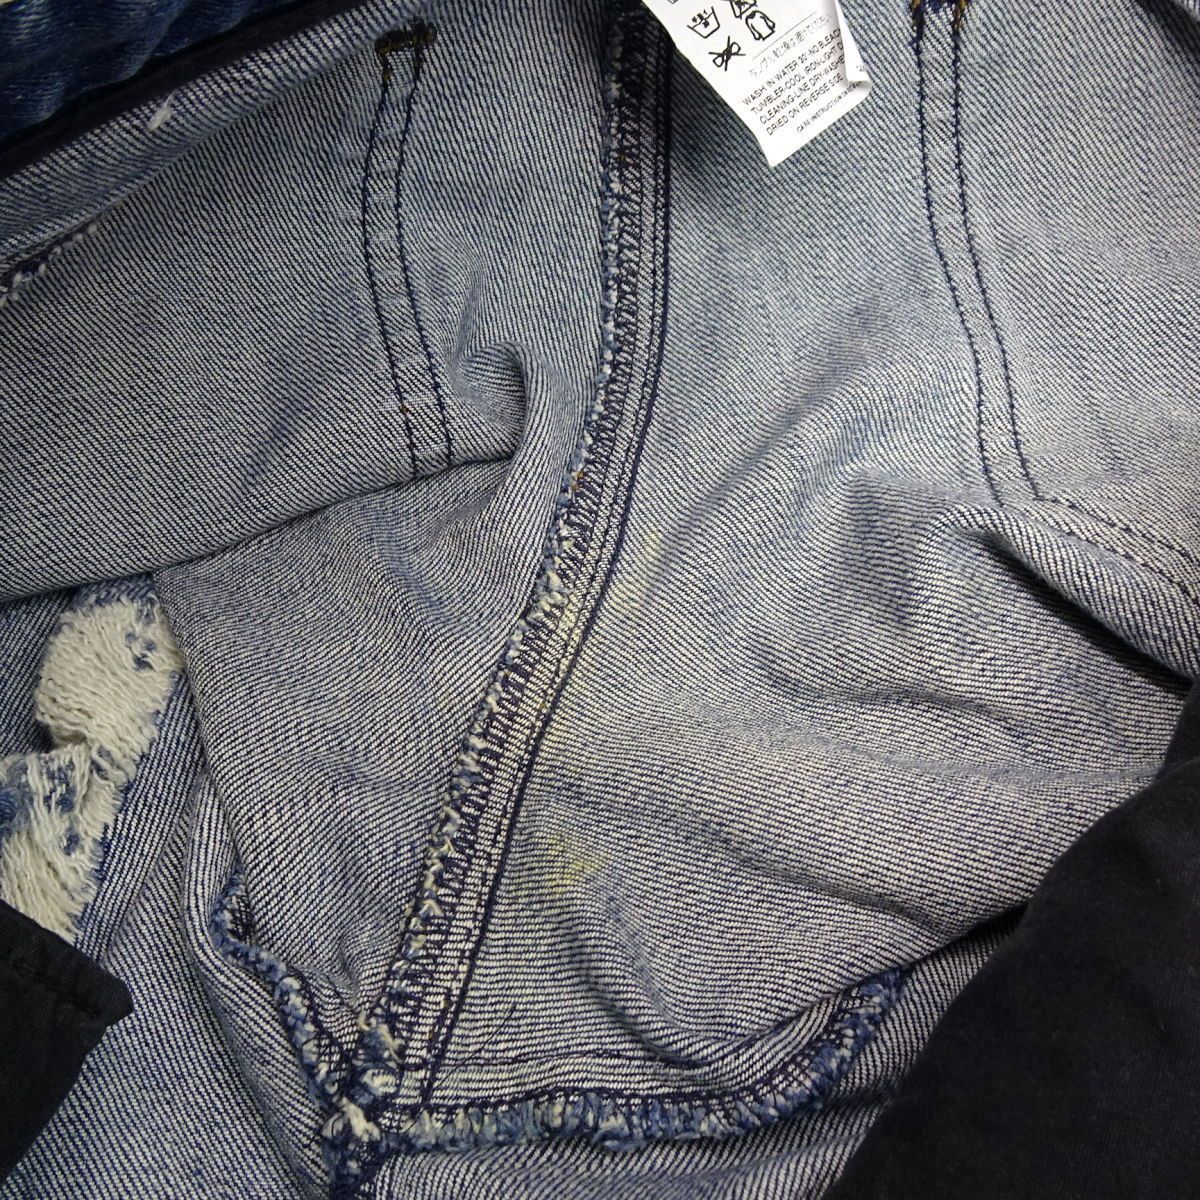 *S1776 отличный Dolce & Gabbana повреждение обработка обтягивающие джинсы брюки голубой 38 женский *